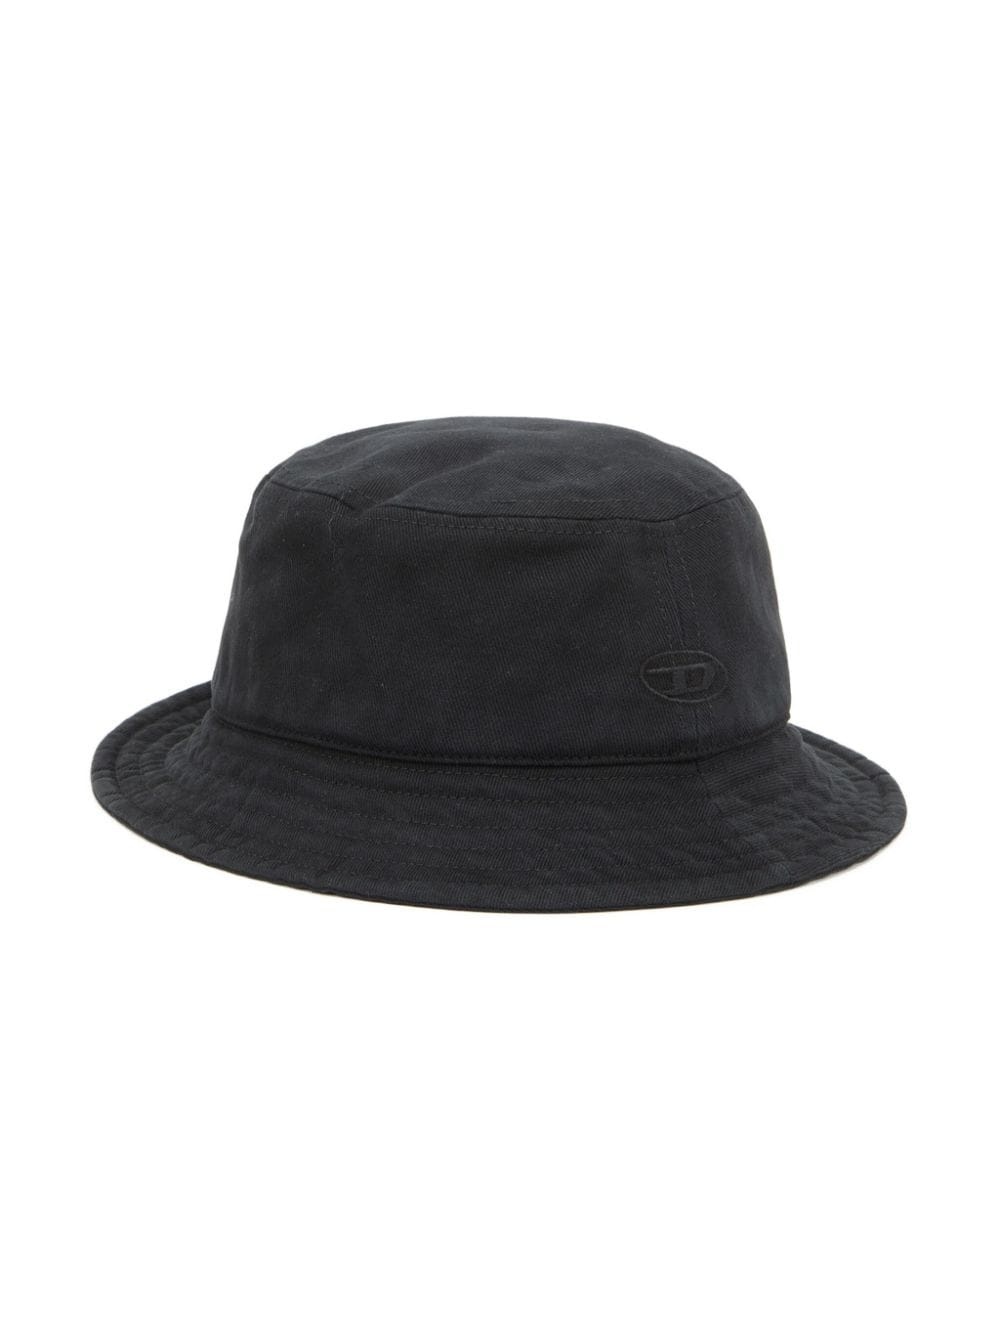 C-FISHER-WASH bucket hat - 2